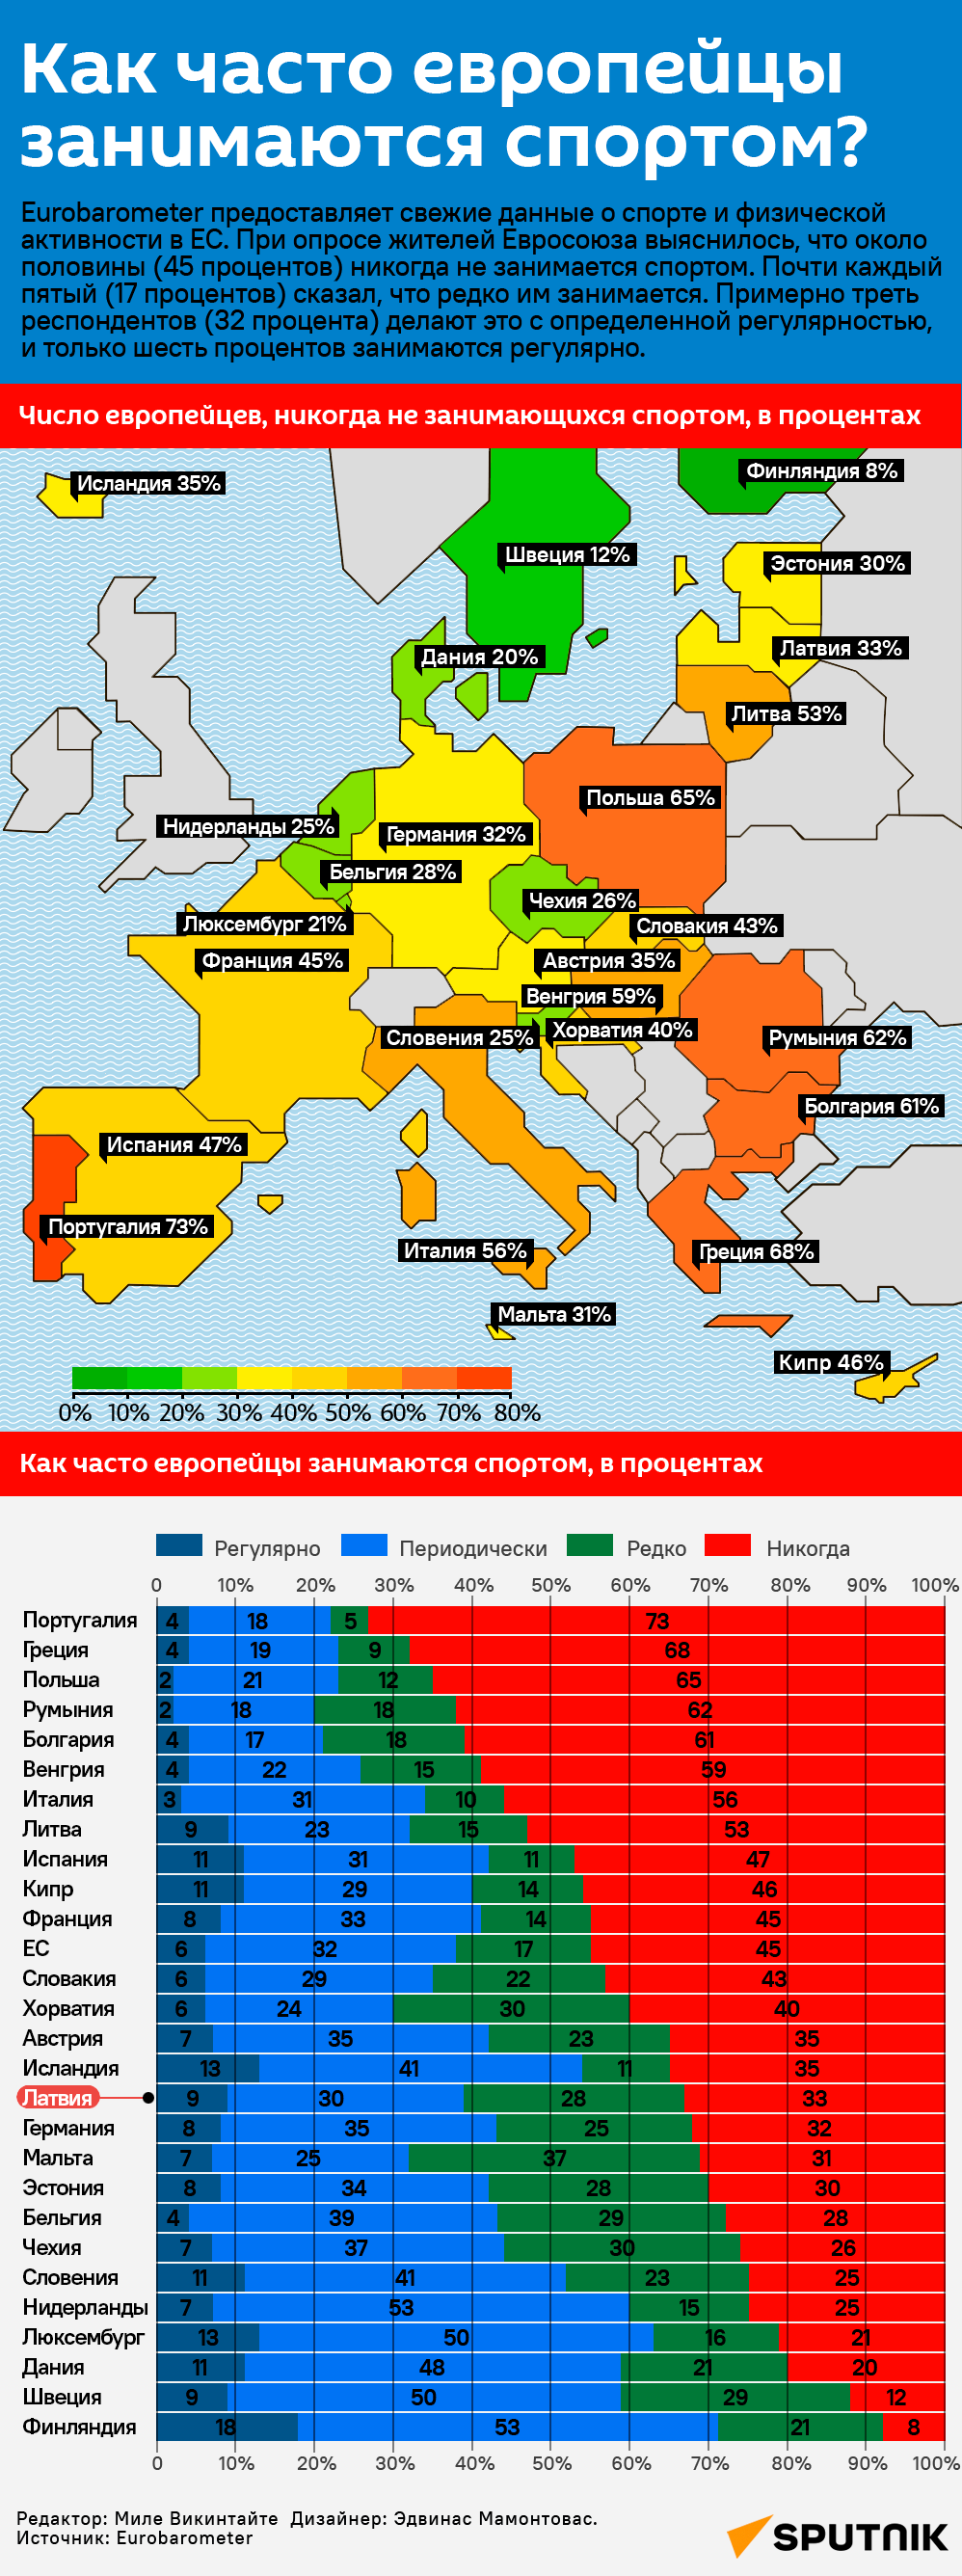 Как часто европейцы занимаются спортом? - Sputnik Латвия